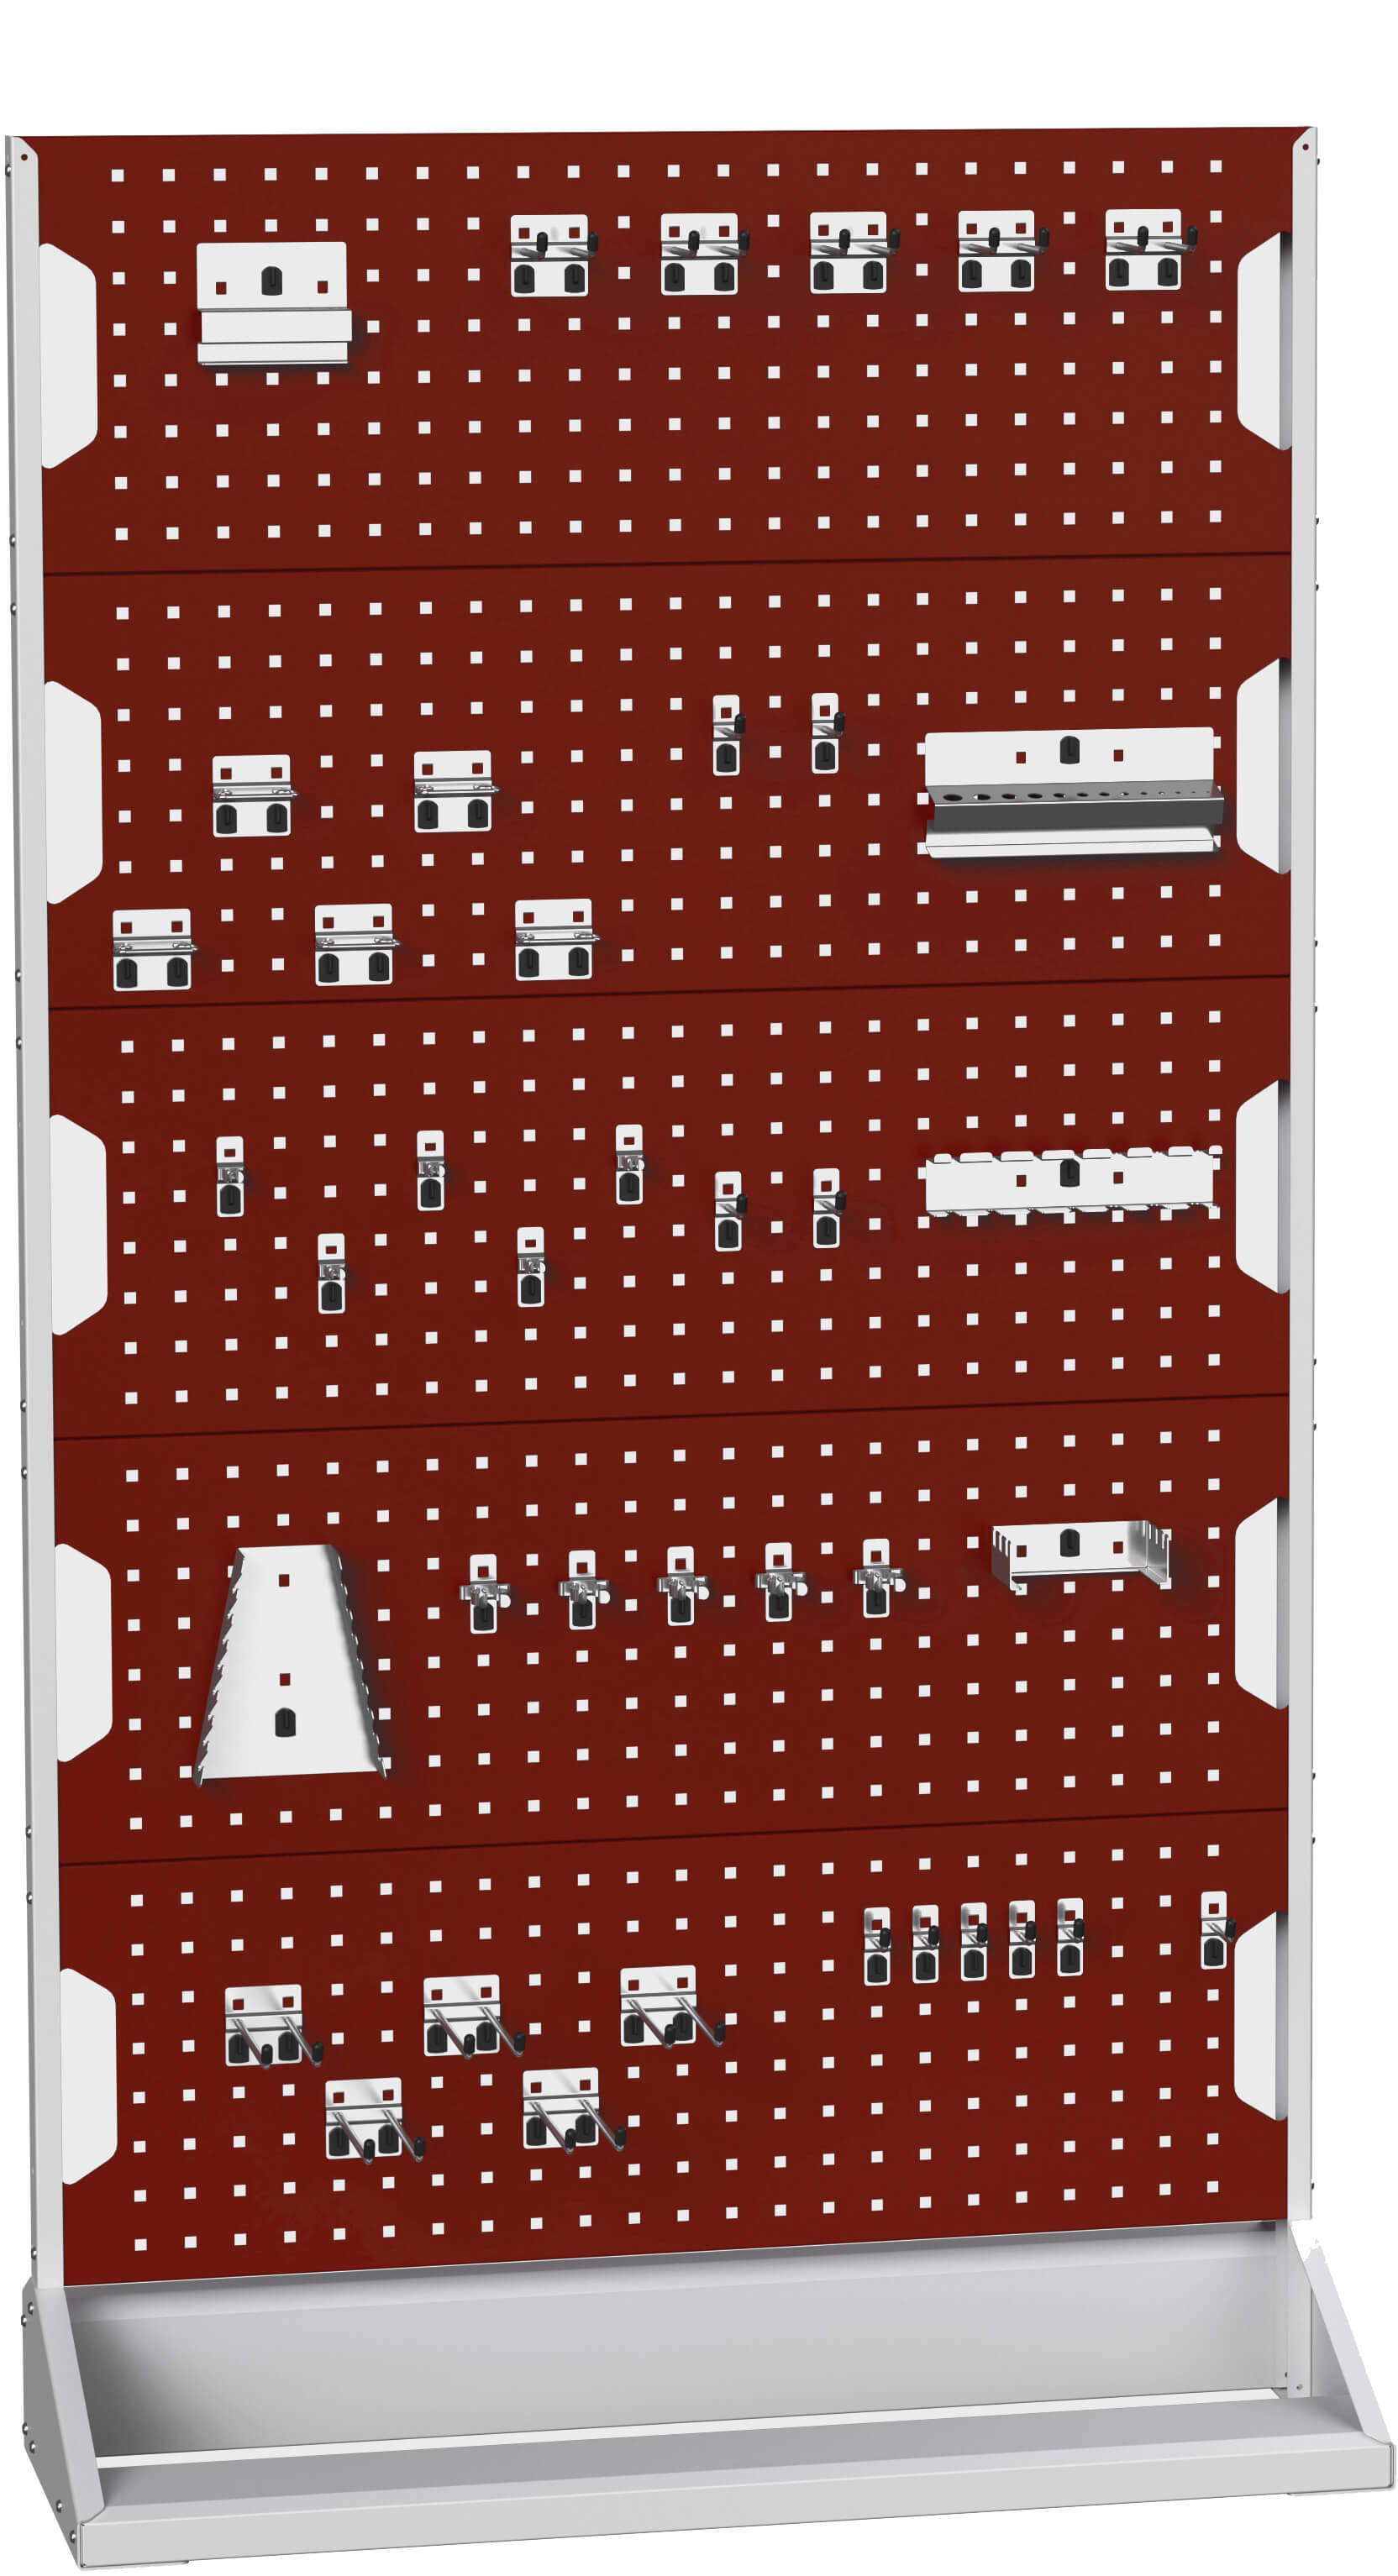 Bott Perfo Panel Rack (Single Sided) - 16917302.24V